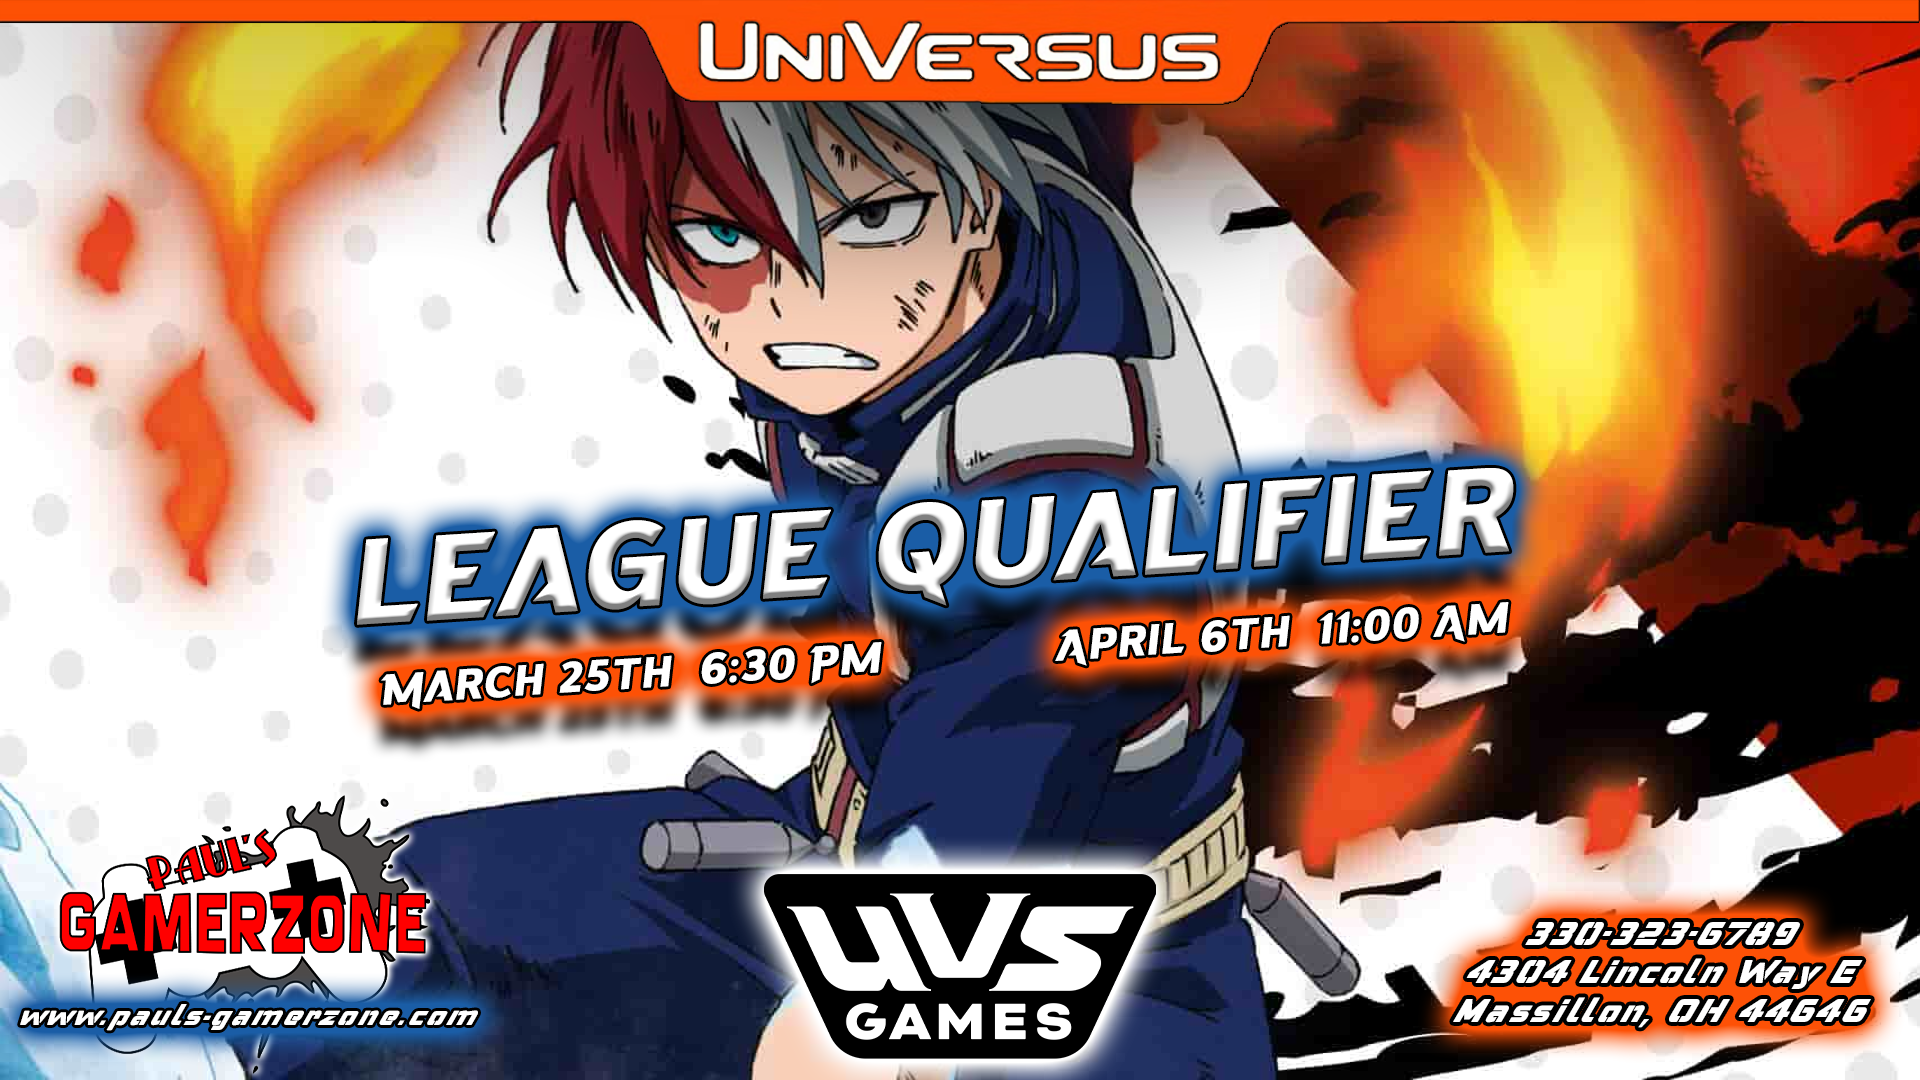 UniVersus League Qualifiers!